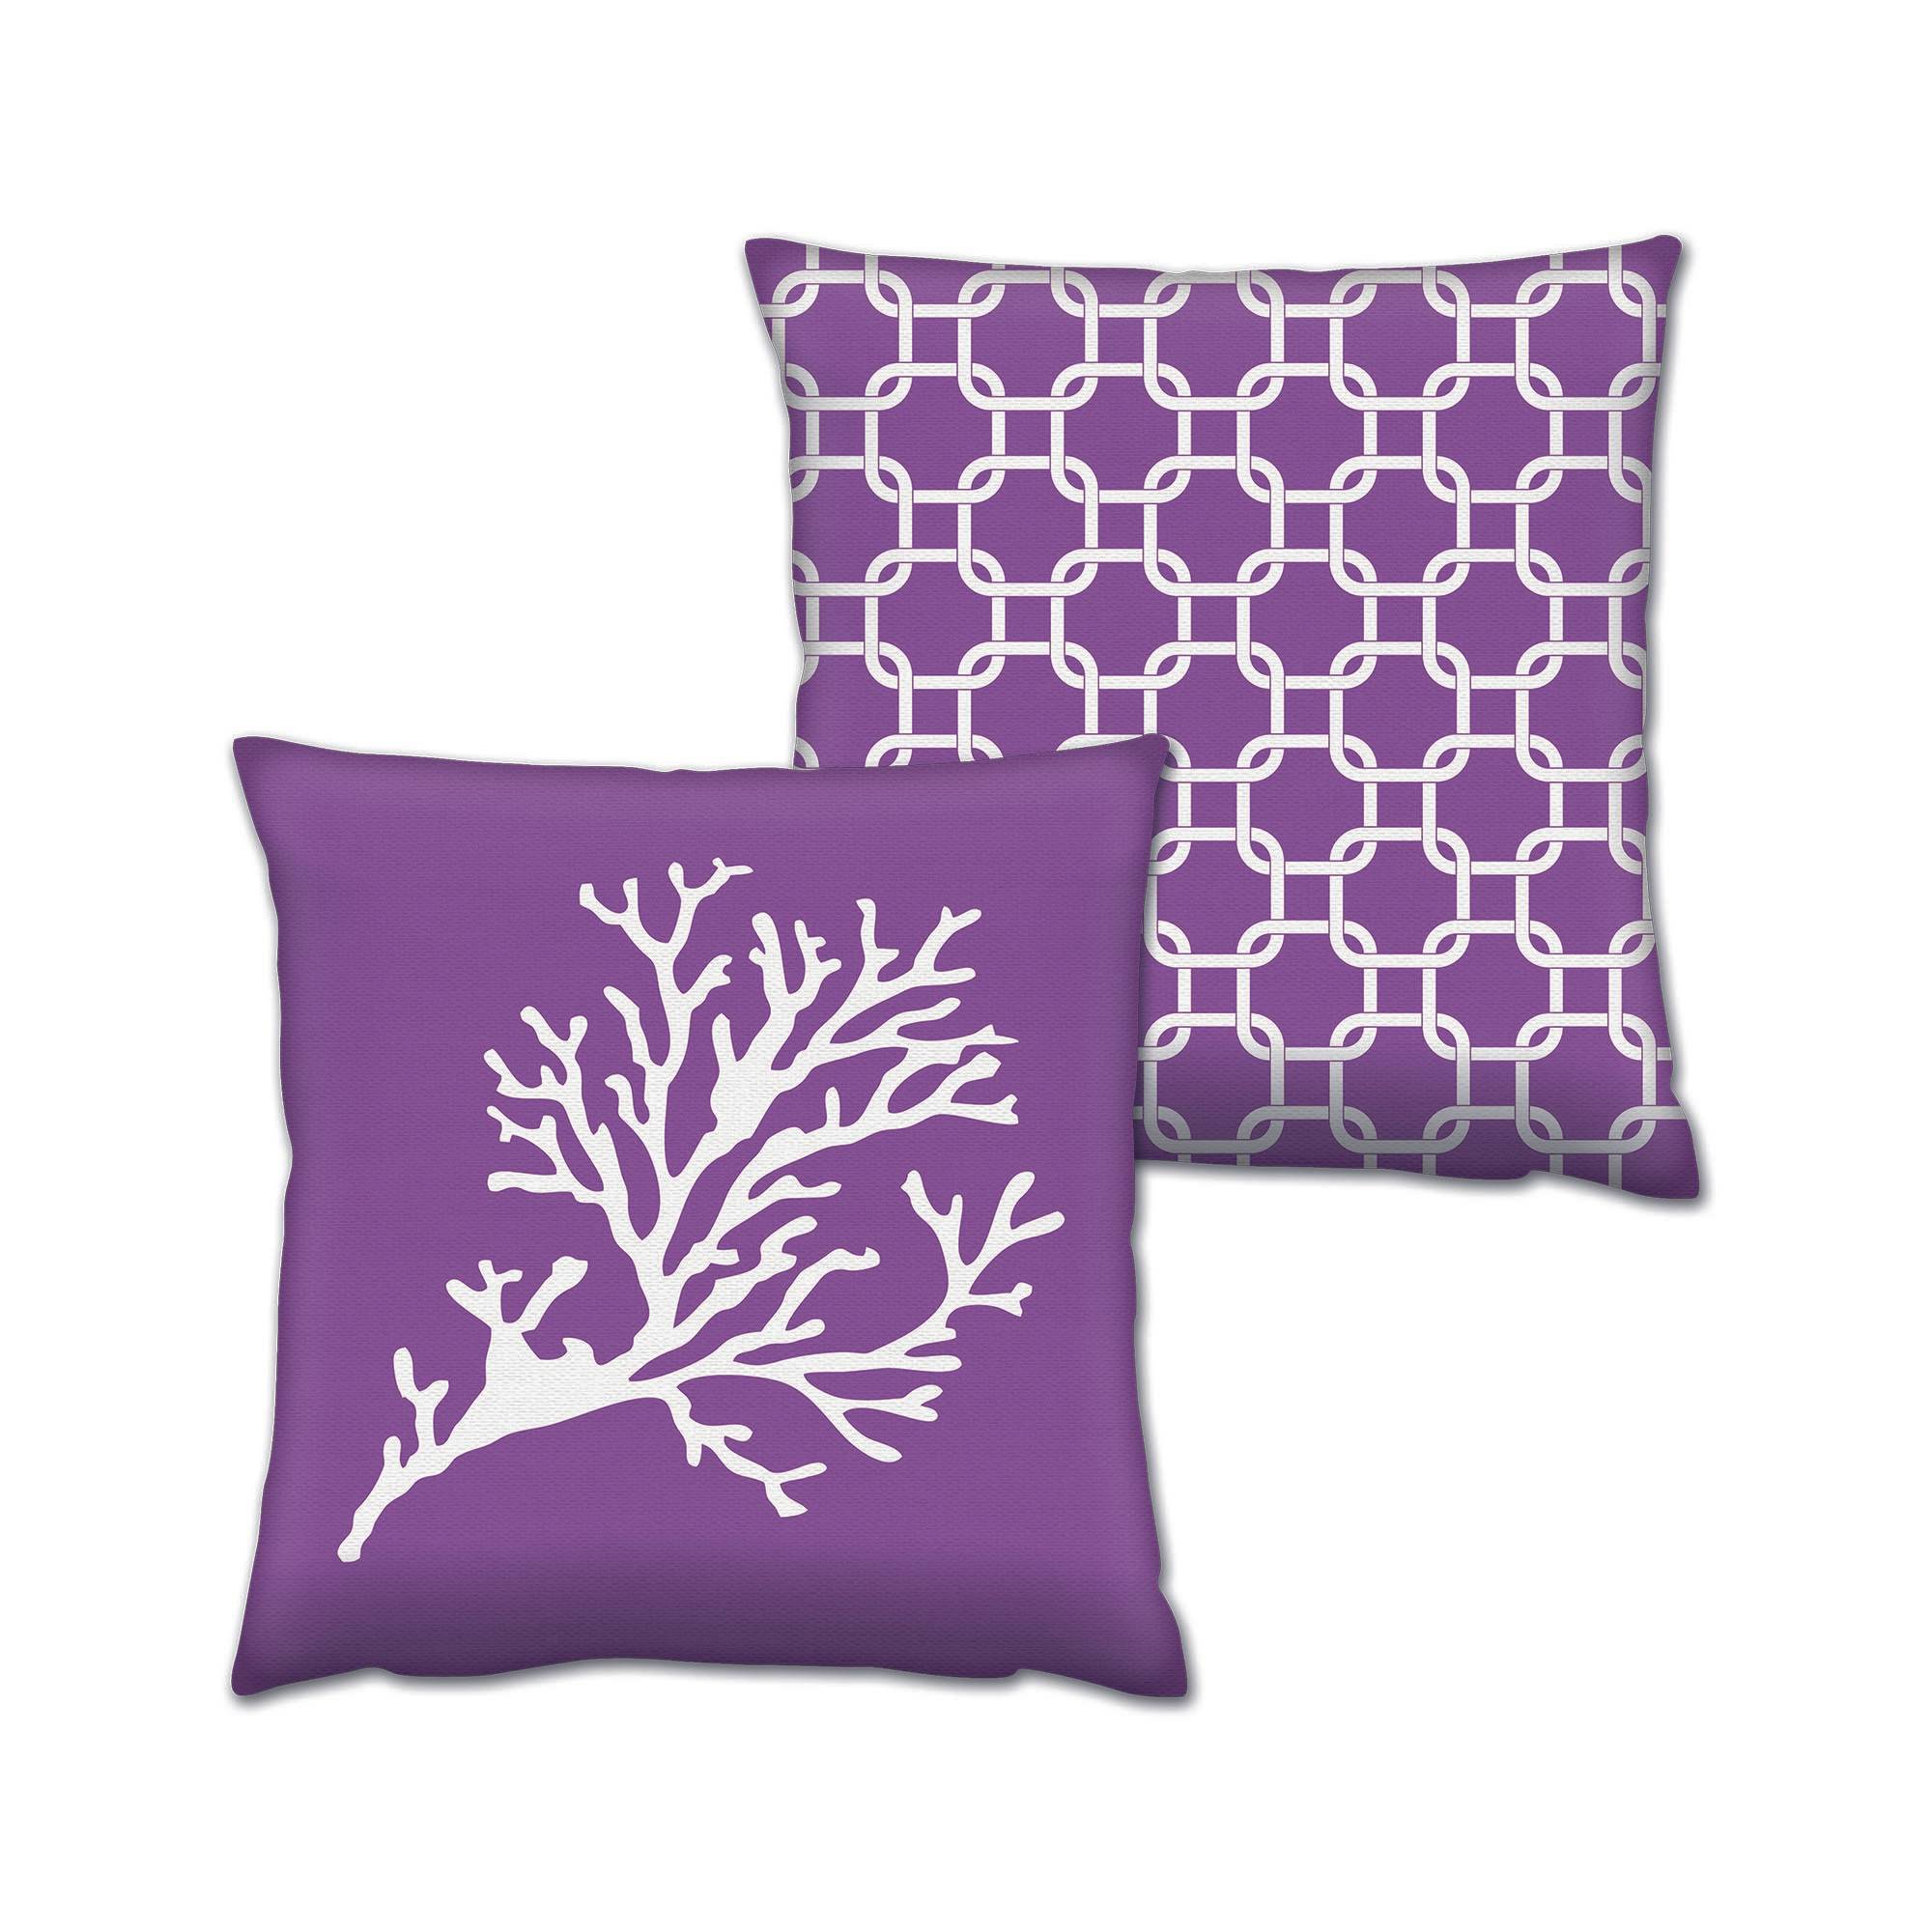 Set bestehend aus 2 passenden Kissen Decorare Winter 43 x 43 cm Baumwolle Polyester Lavendelblau